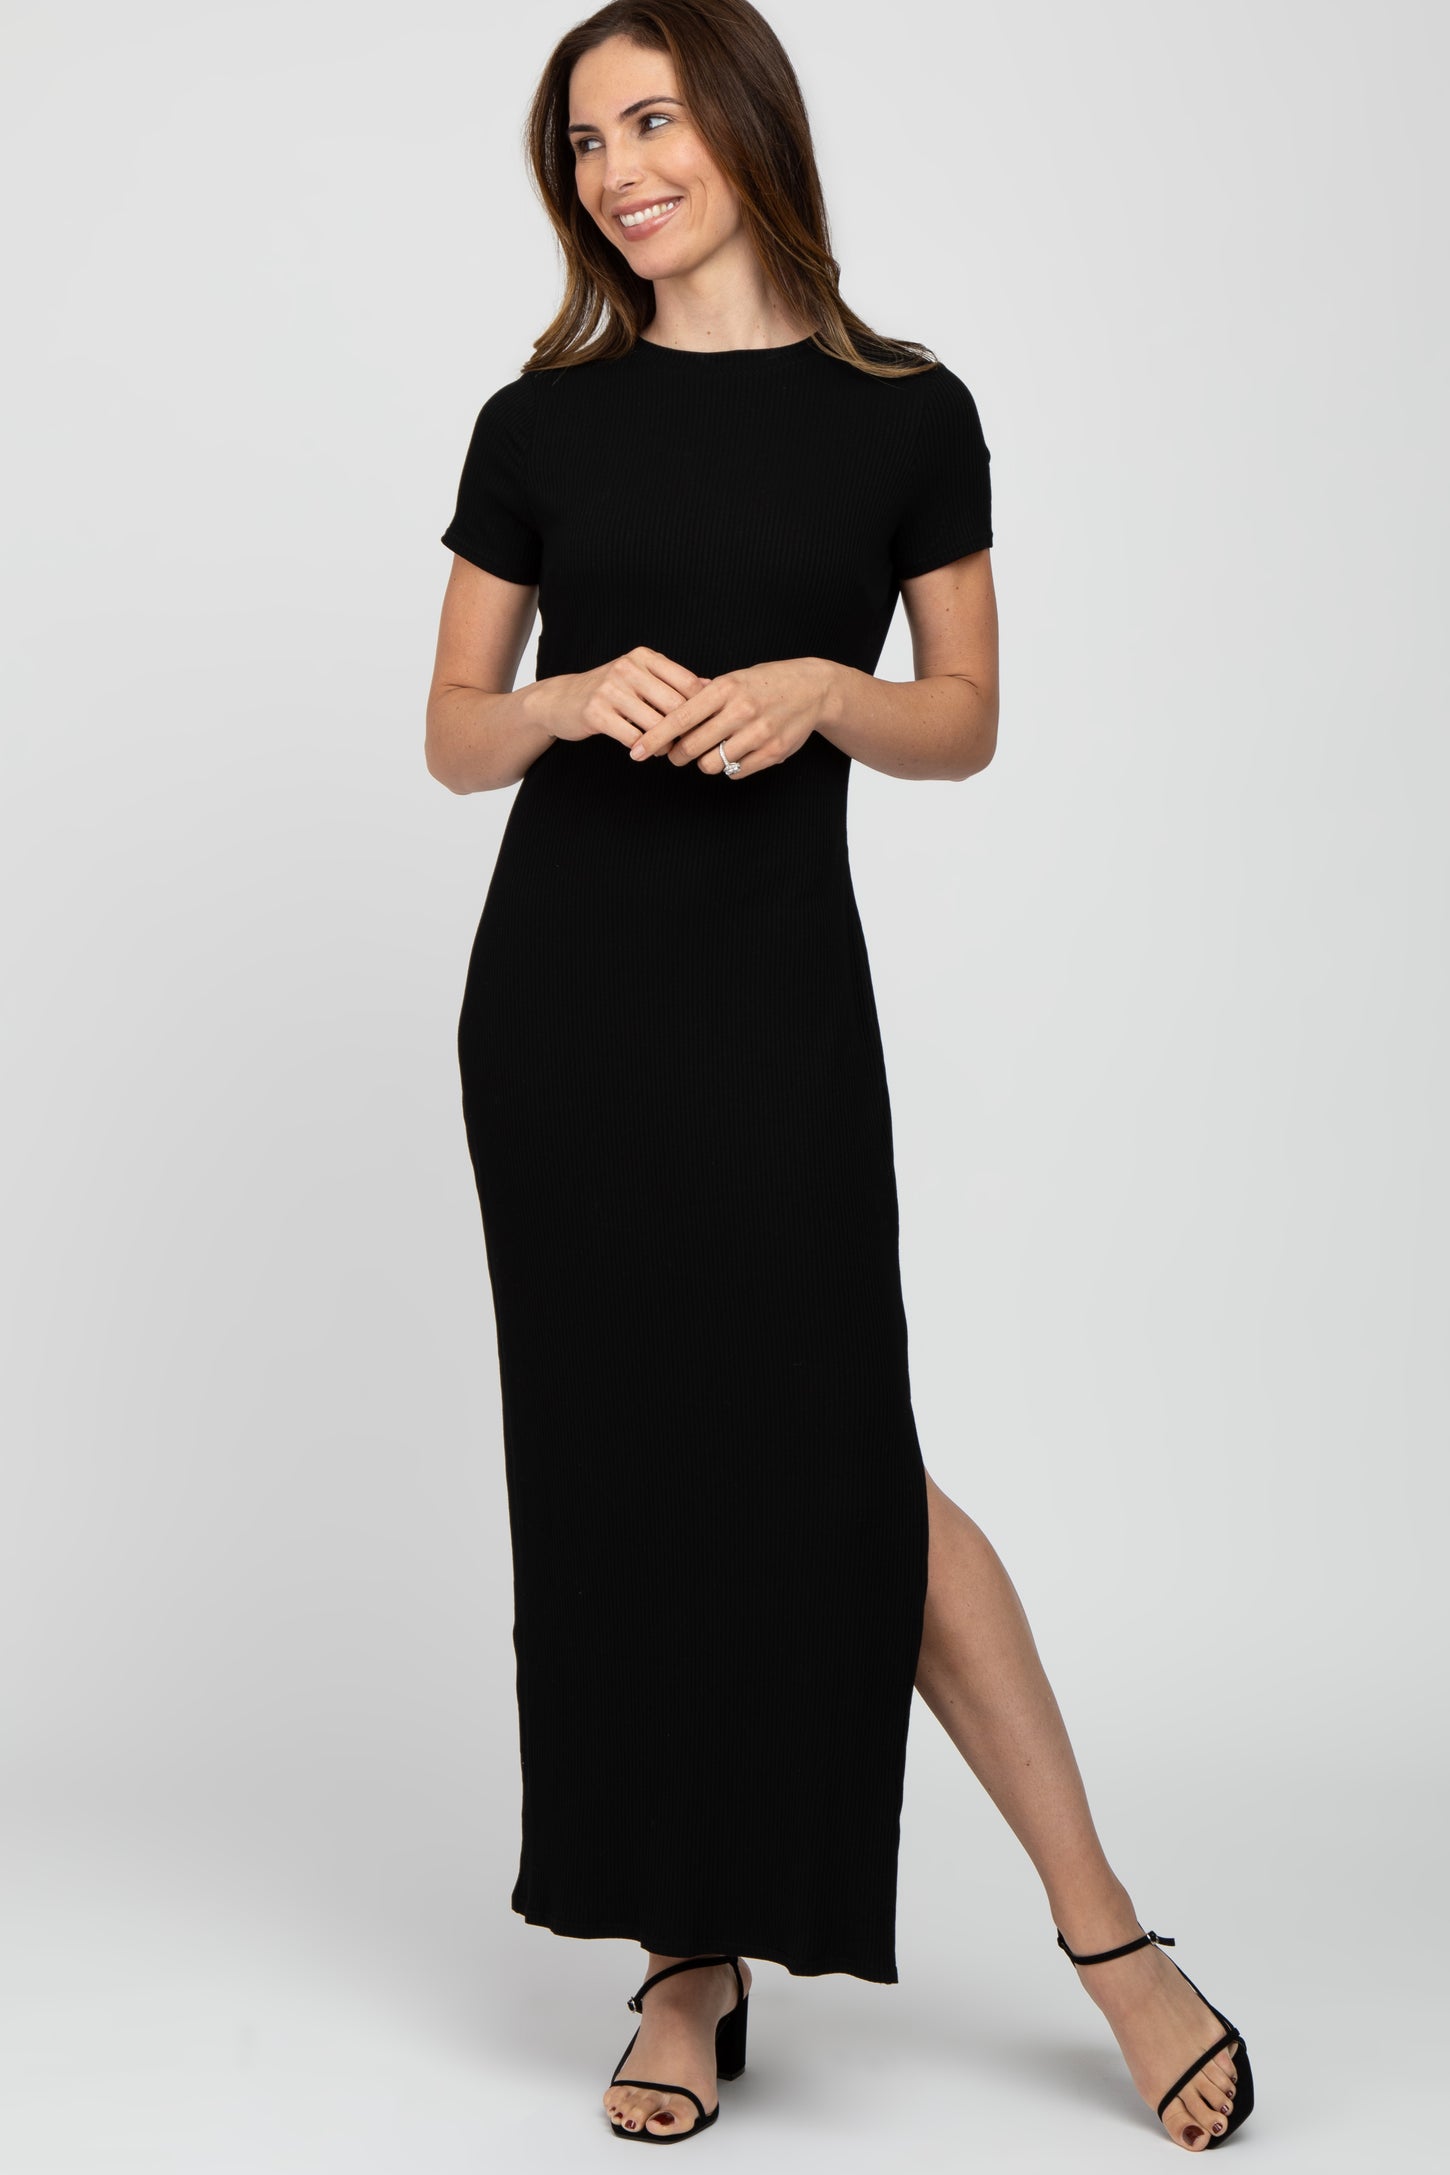 Black Ribbed Side Slit Maxi Dress